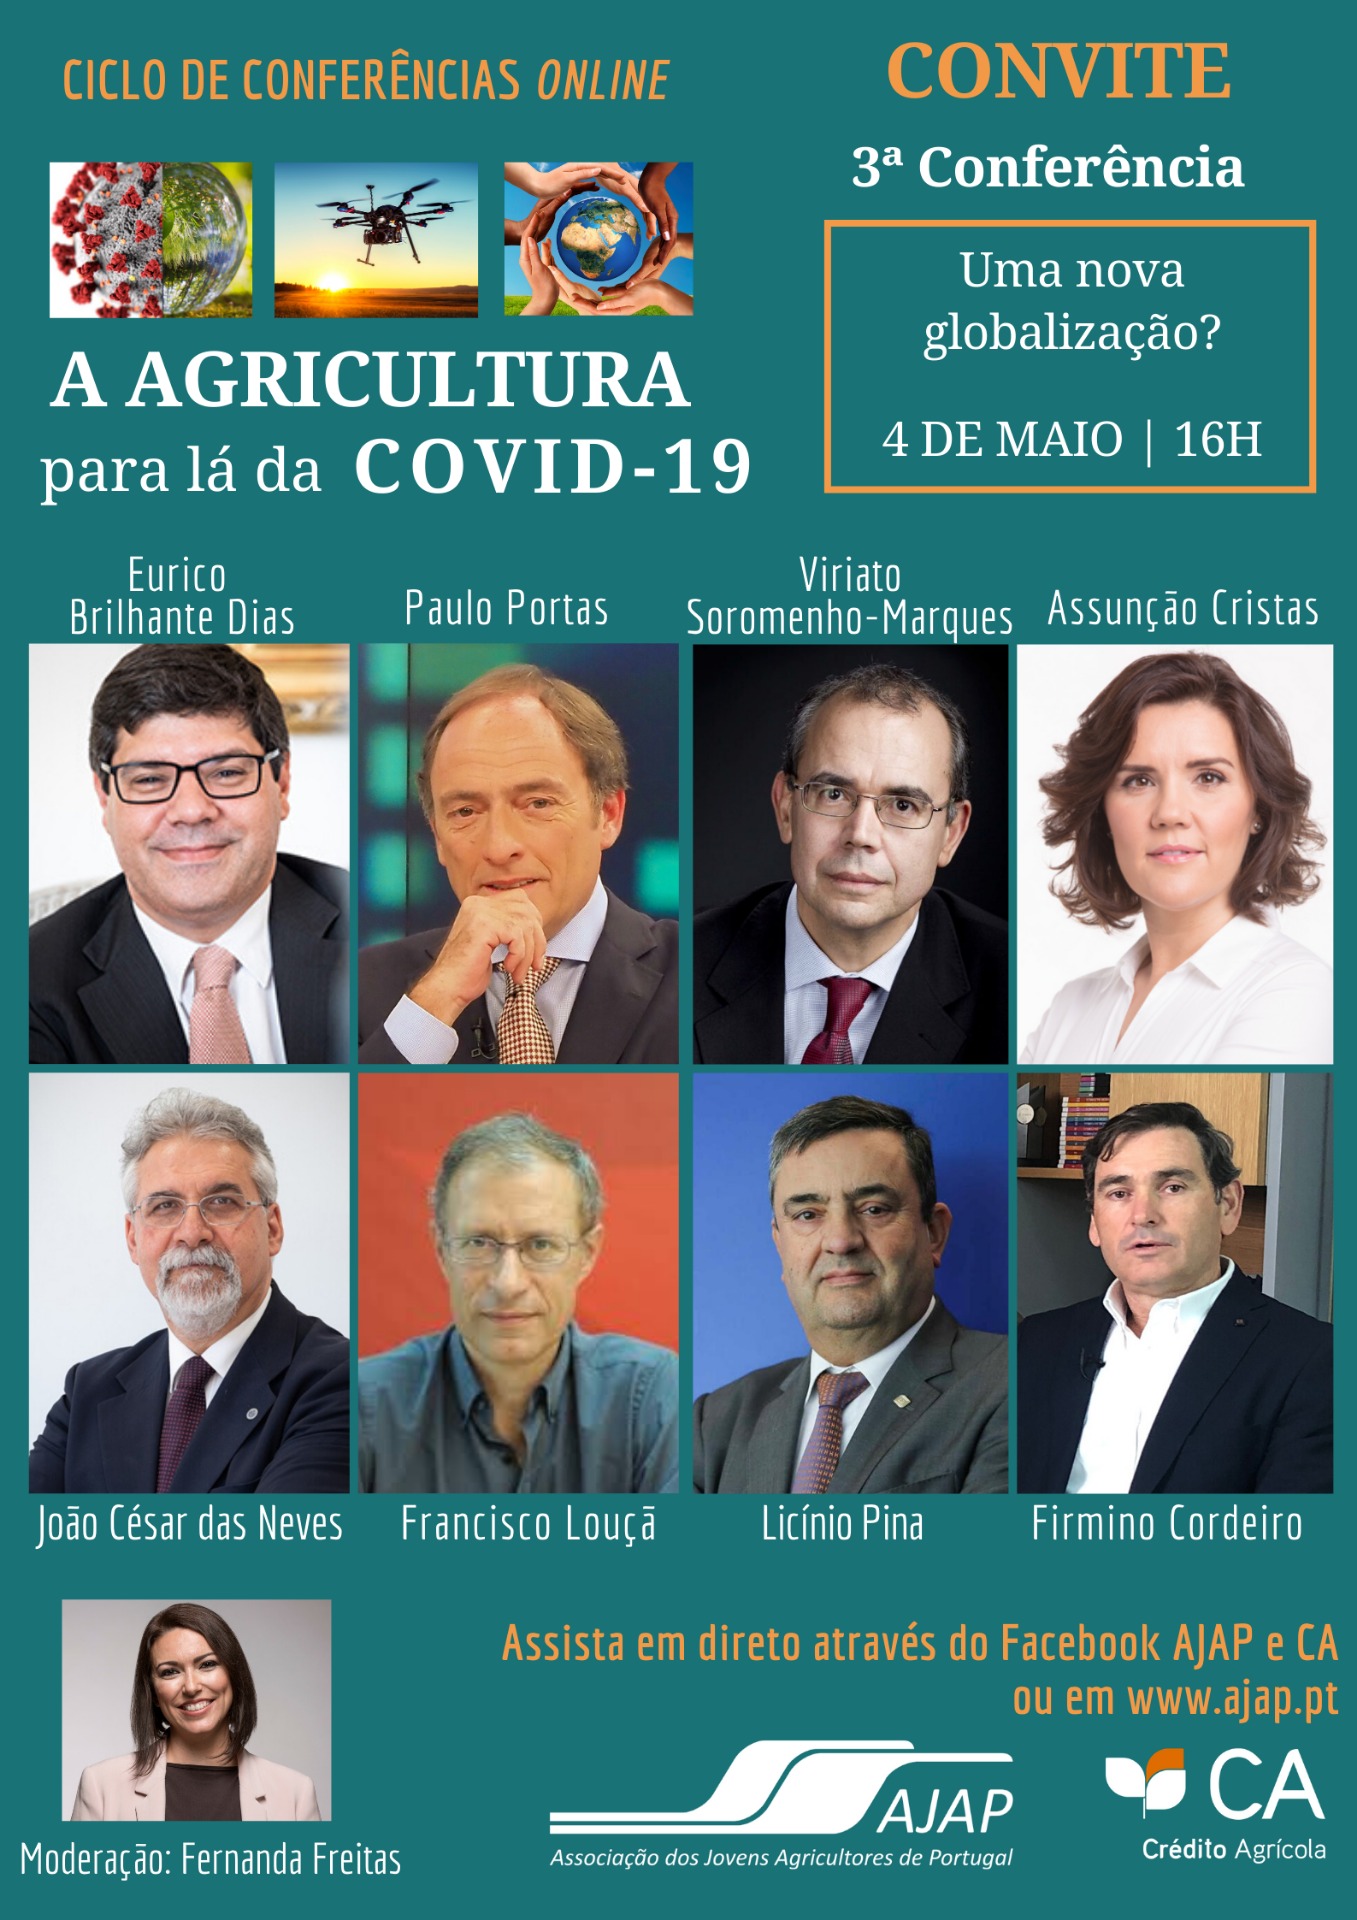 A Agricultura para lá da Covid-19 Ciclo de Conferências AJAP Crédito Agrícola Uma nova globalização